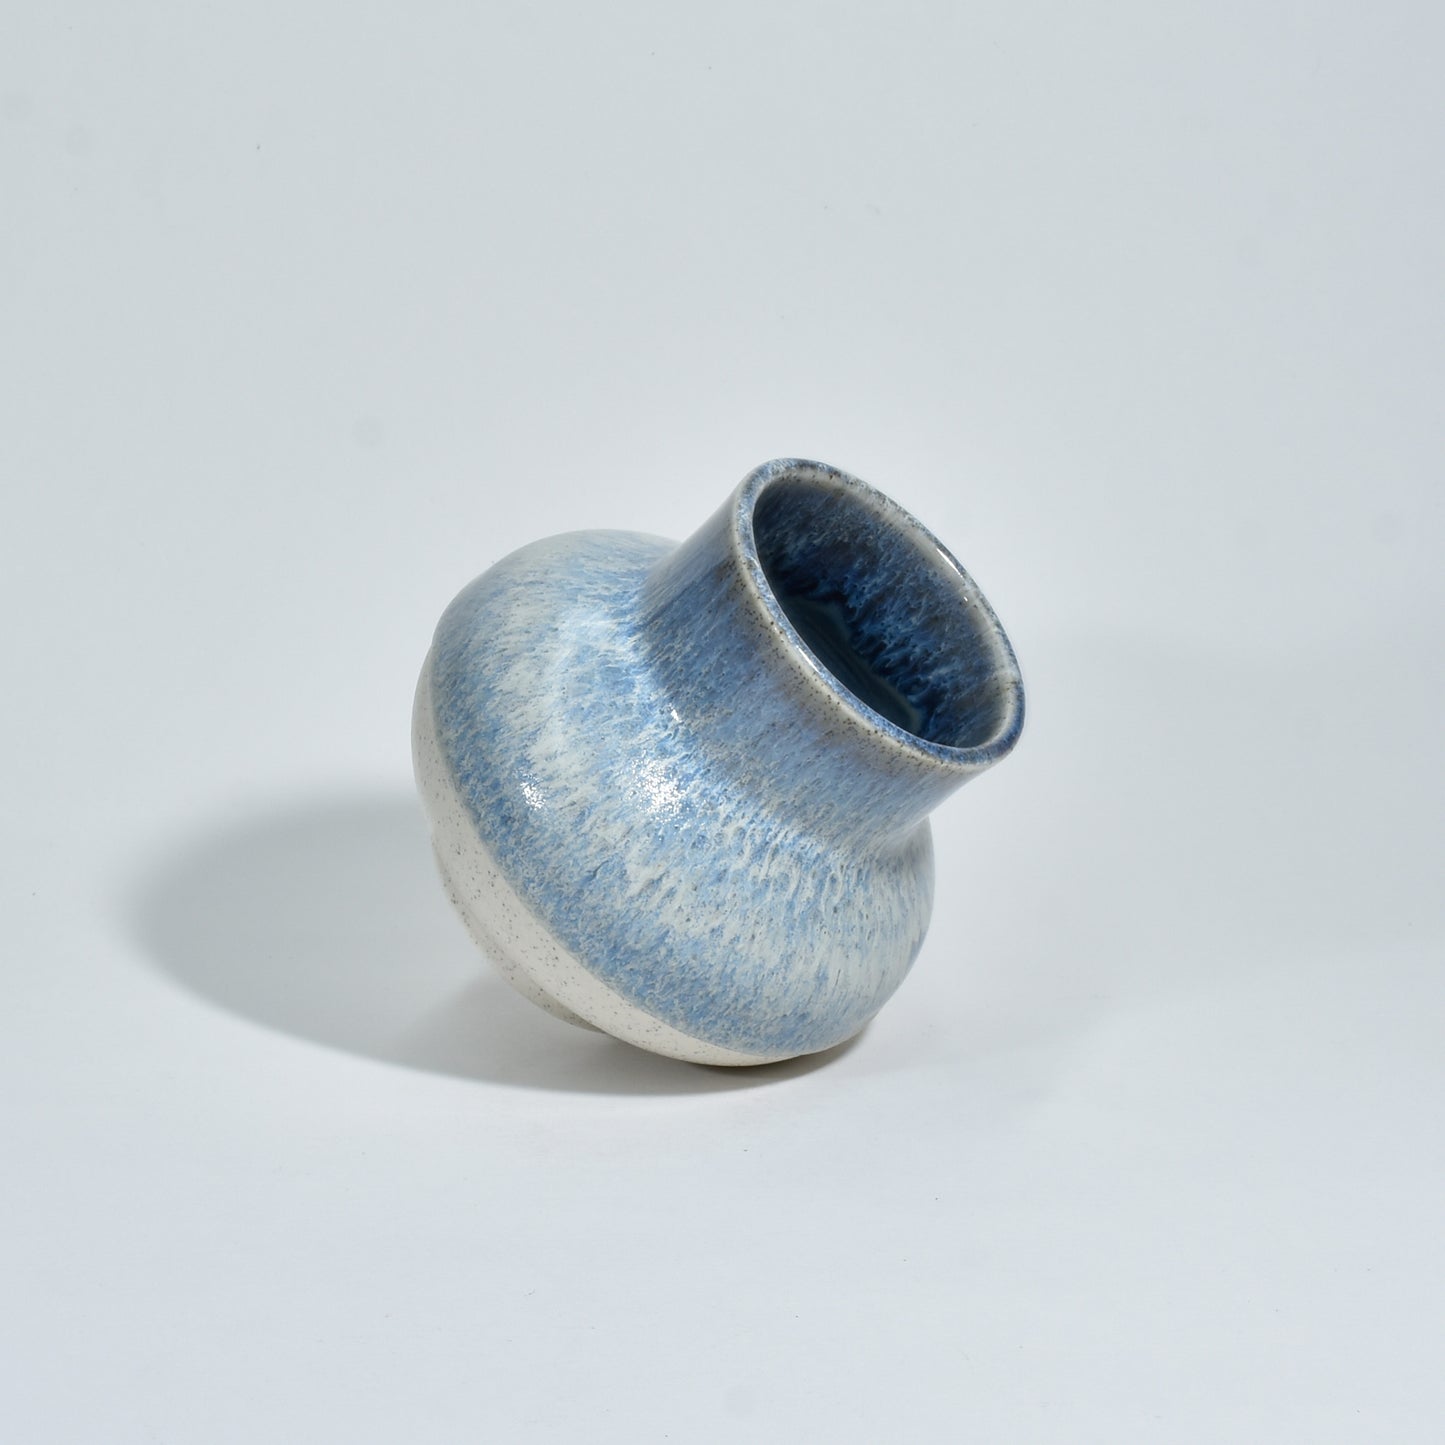 Medium Vase 01